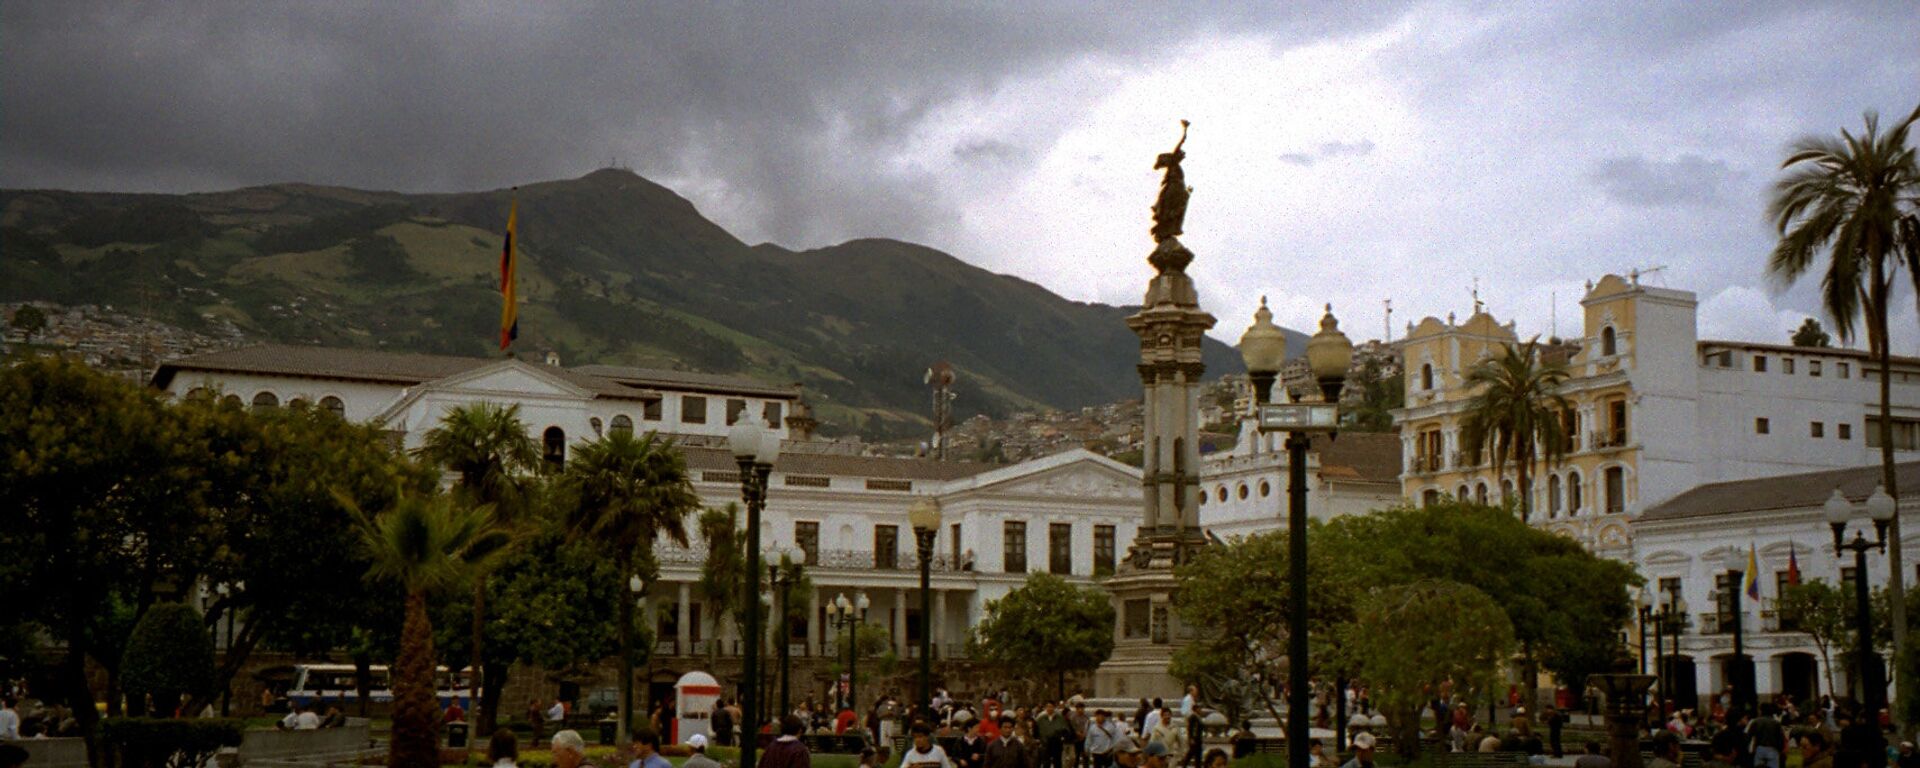 Quito, la capital de Ecuador - Sputnik Mundo, 1920, 11.02.2021